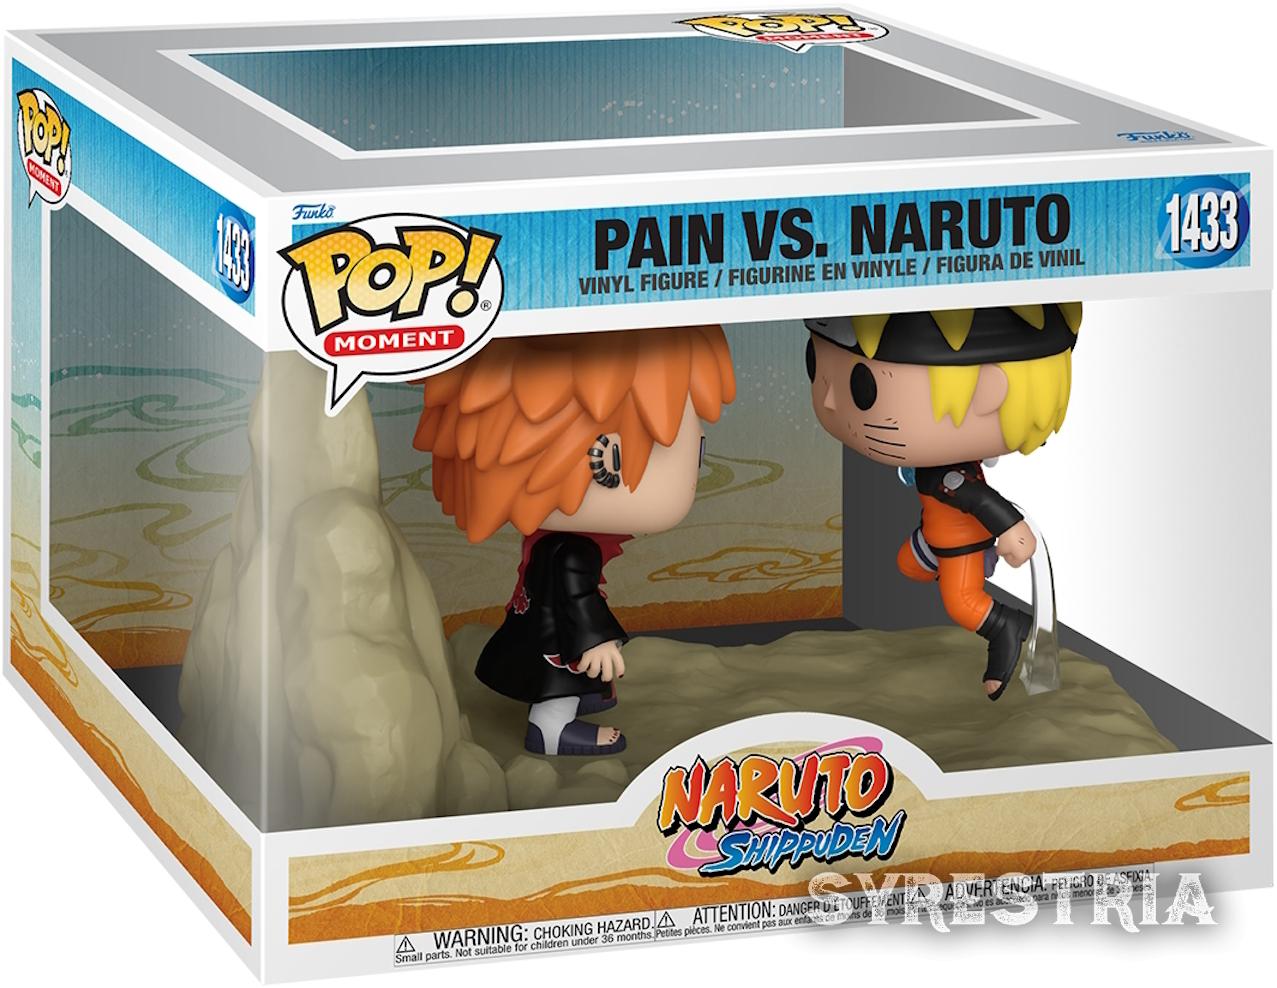 Naruto Shippuden - Pain Vs. Naruto 1433  - Funko Moments Pop!